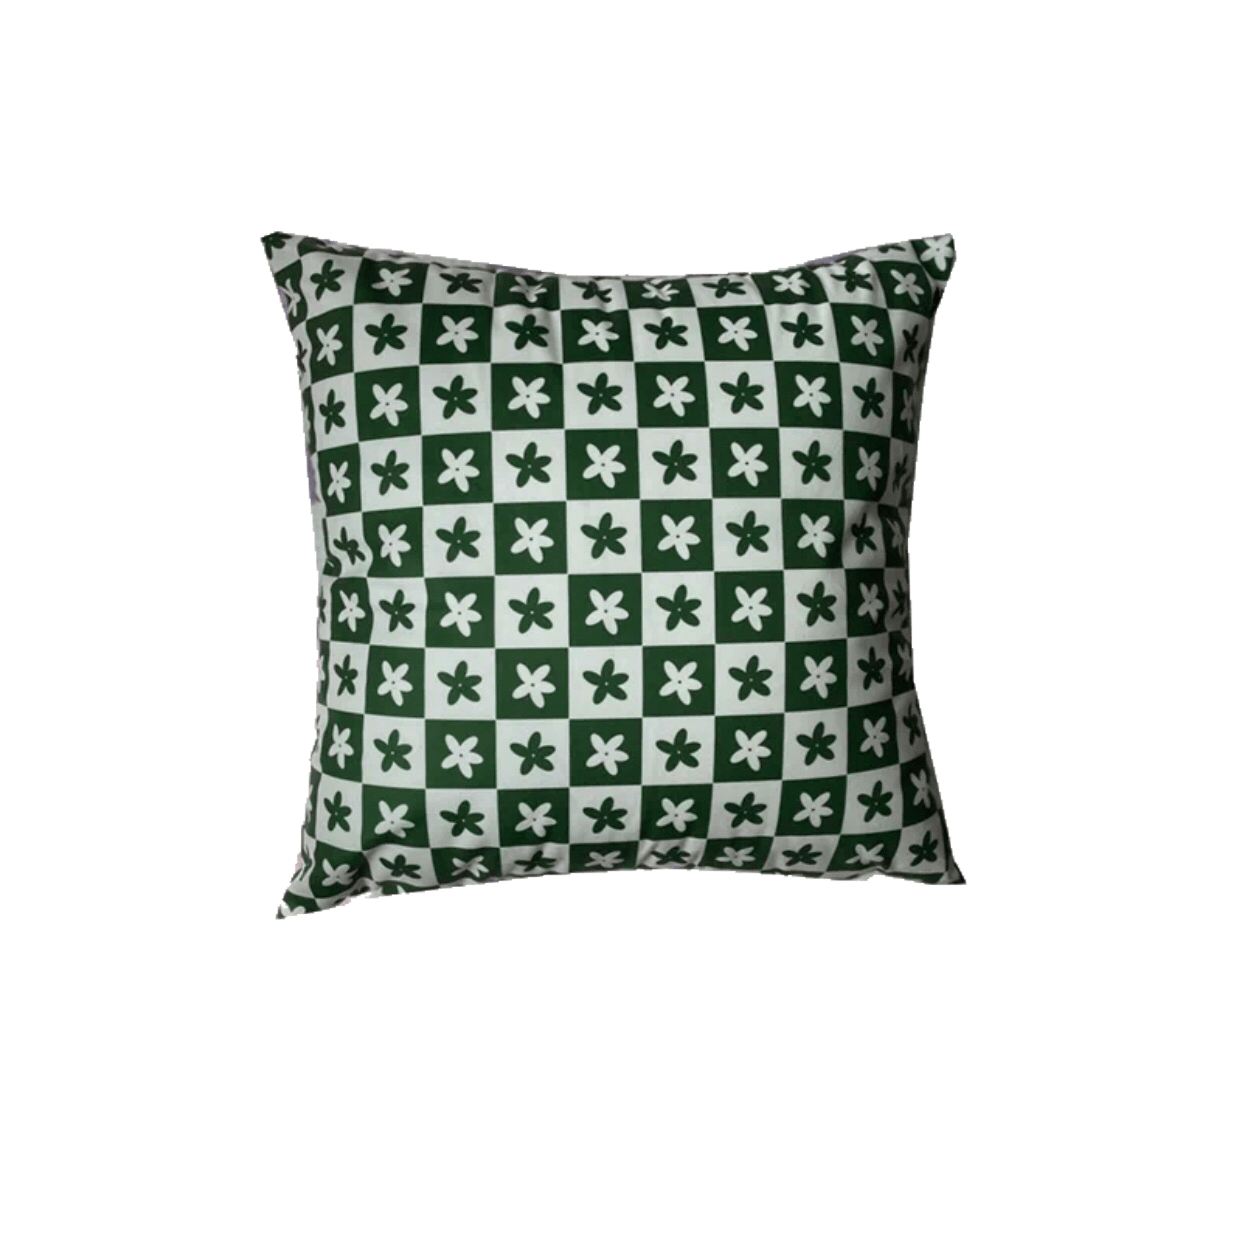 Floral Green Checkered Throw Pillow Case